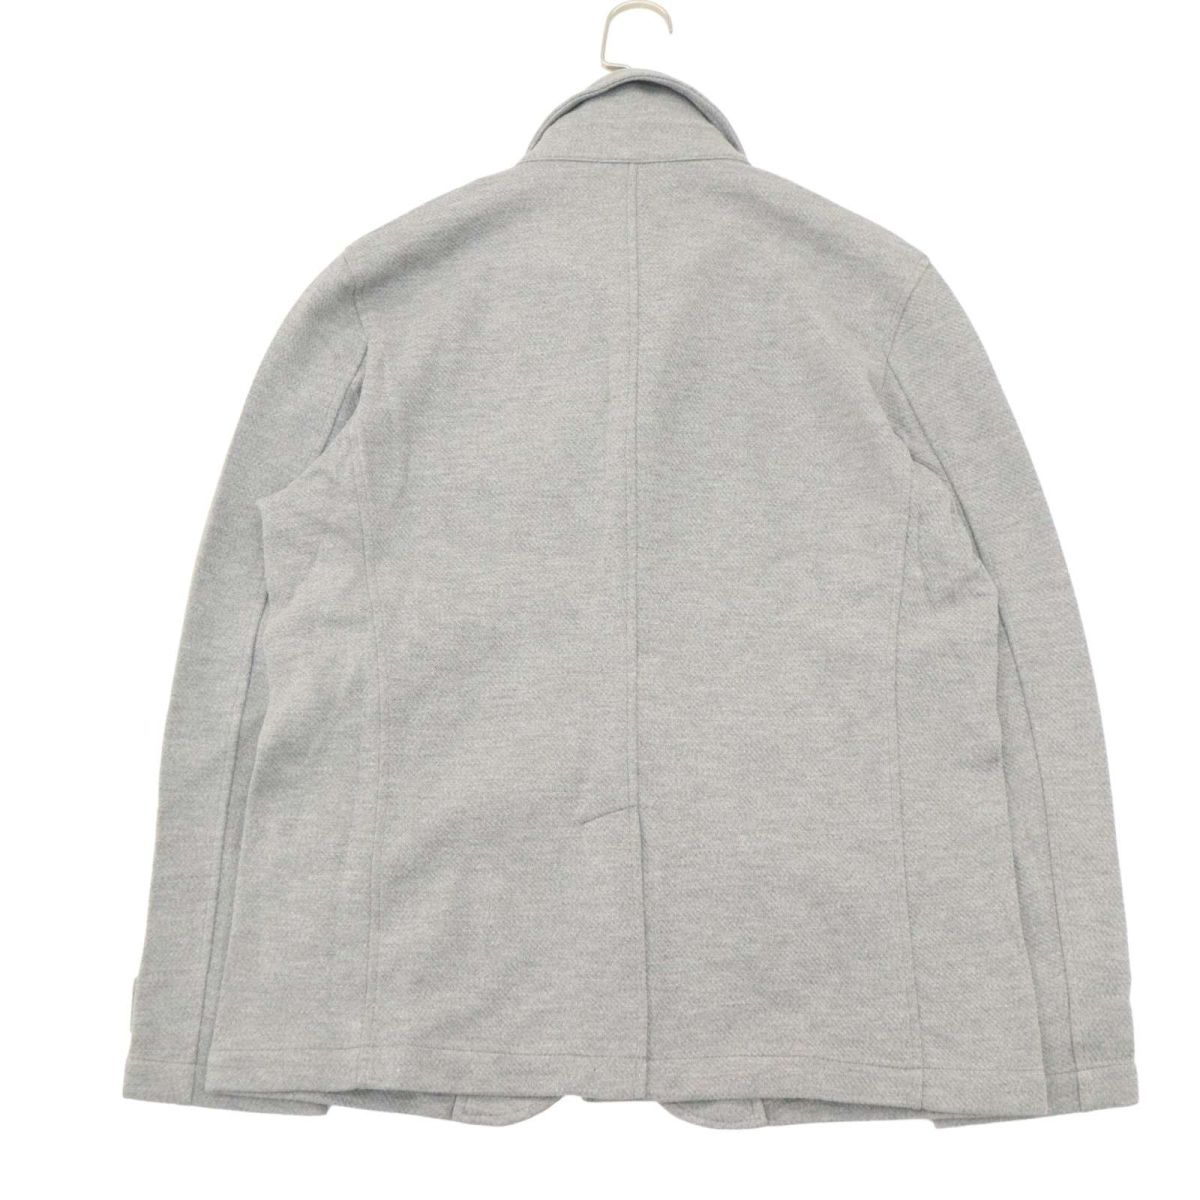 [ новый товар не использовался ] THE SHOP TK Takeo Kikuchi через год подкладка окантовка * раунд цвет жакет Sz.L мужской серый A4T01328_2#O